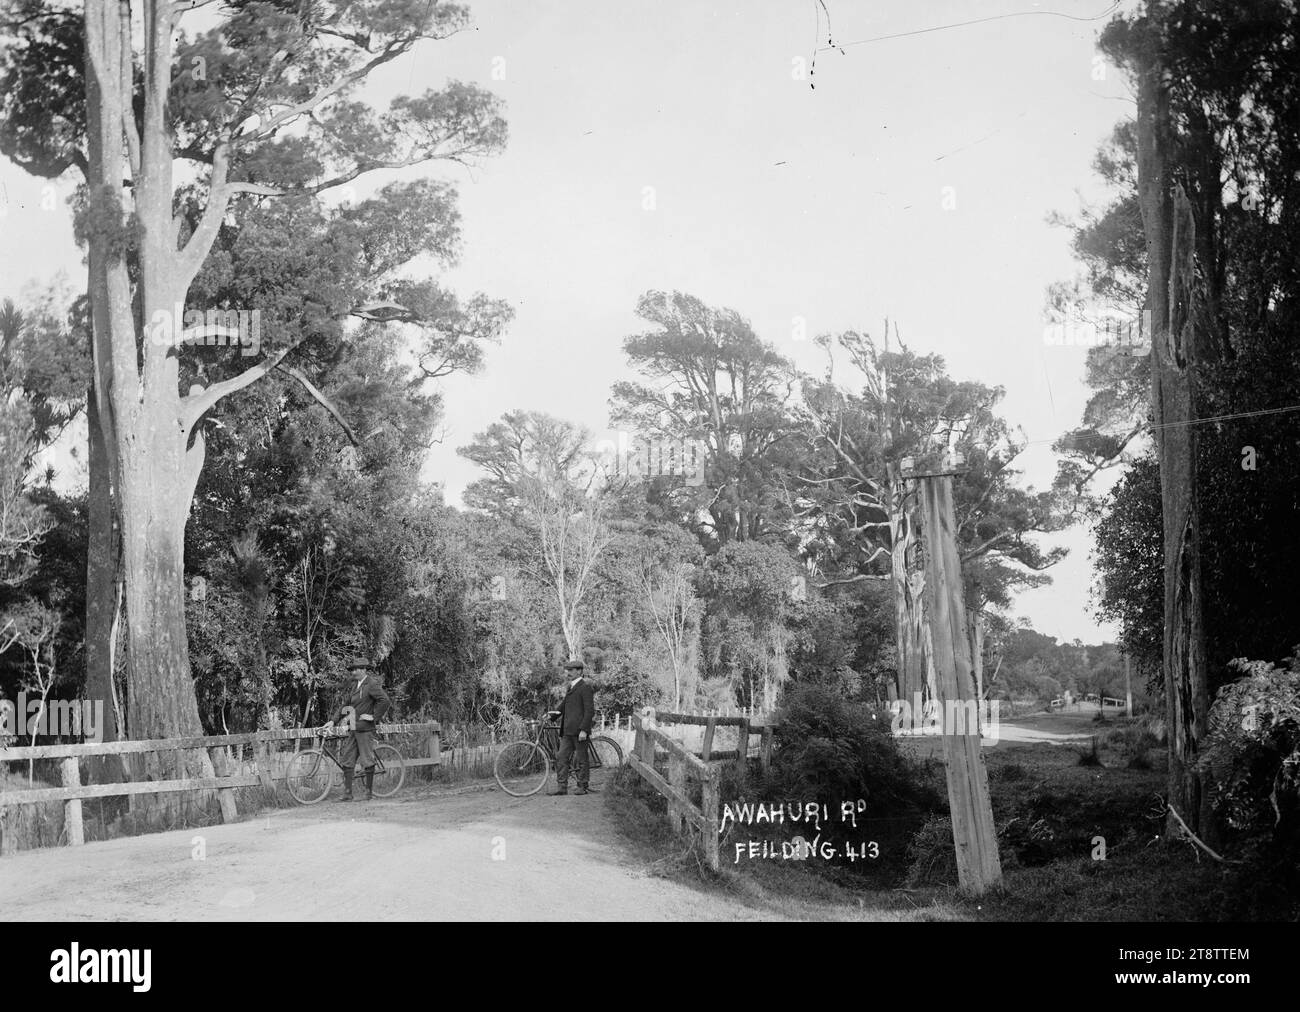 Awahuri Road, Manawatu, Awahuri Road, Manawatu, circa 1910. Deux hommes non identifiés avec des vélos se tiennent sur un pont au-dessus d'un ravin étroit. Photographié Banque D'Images